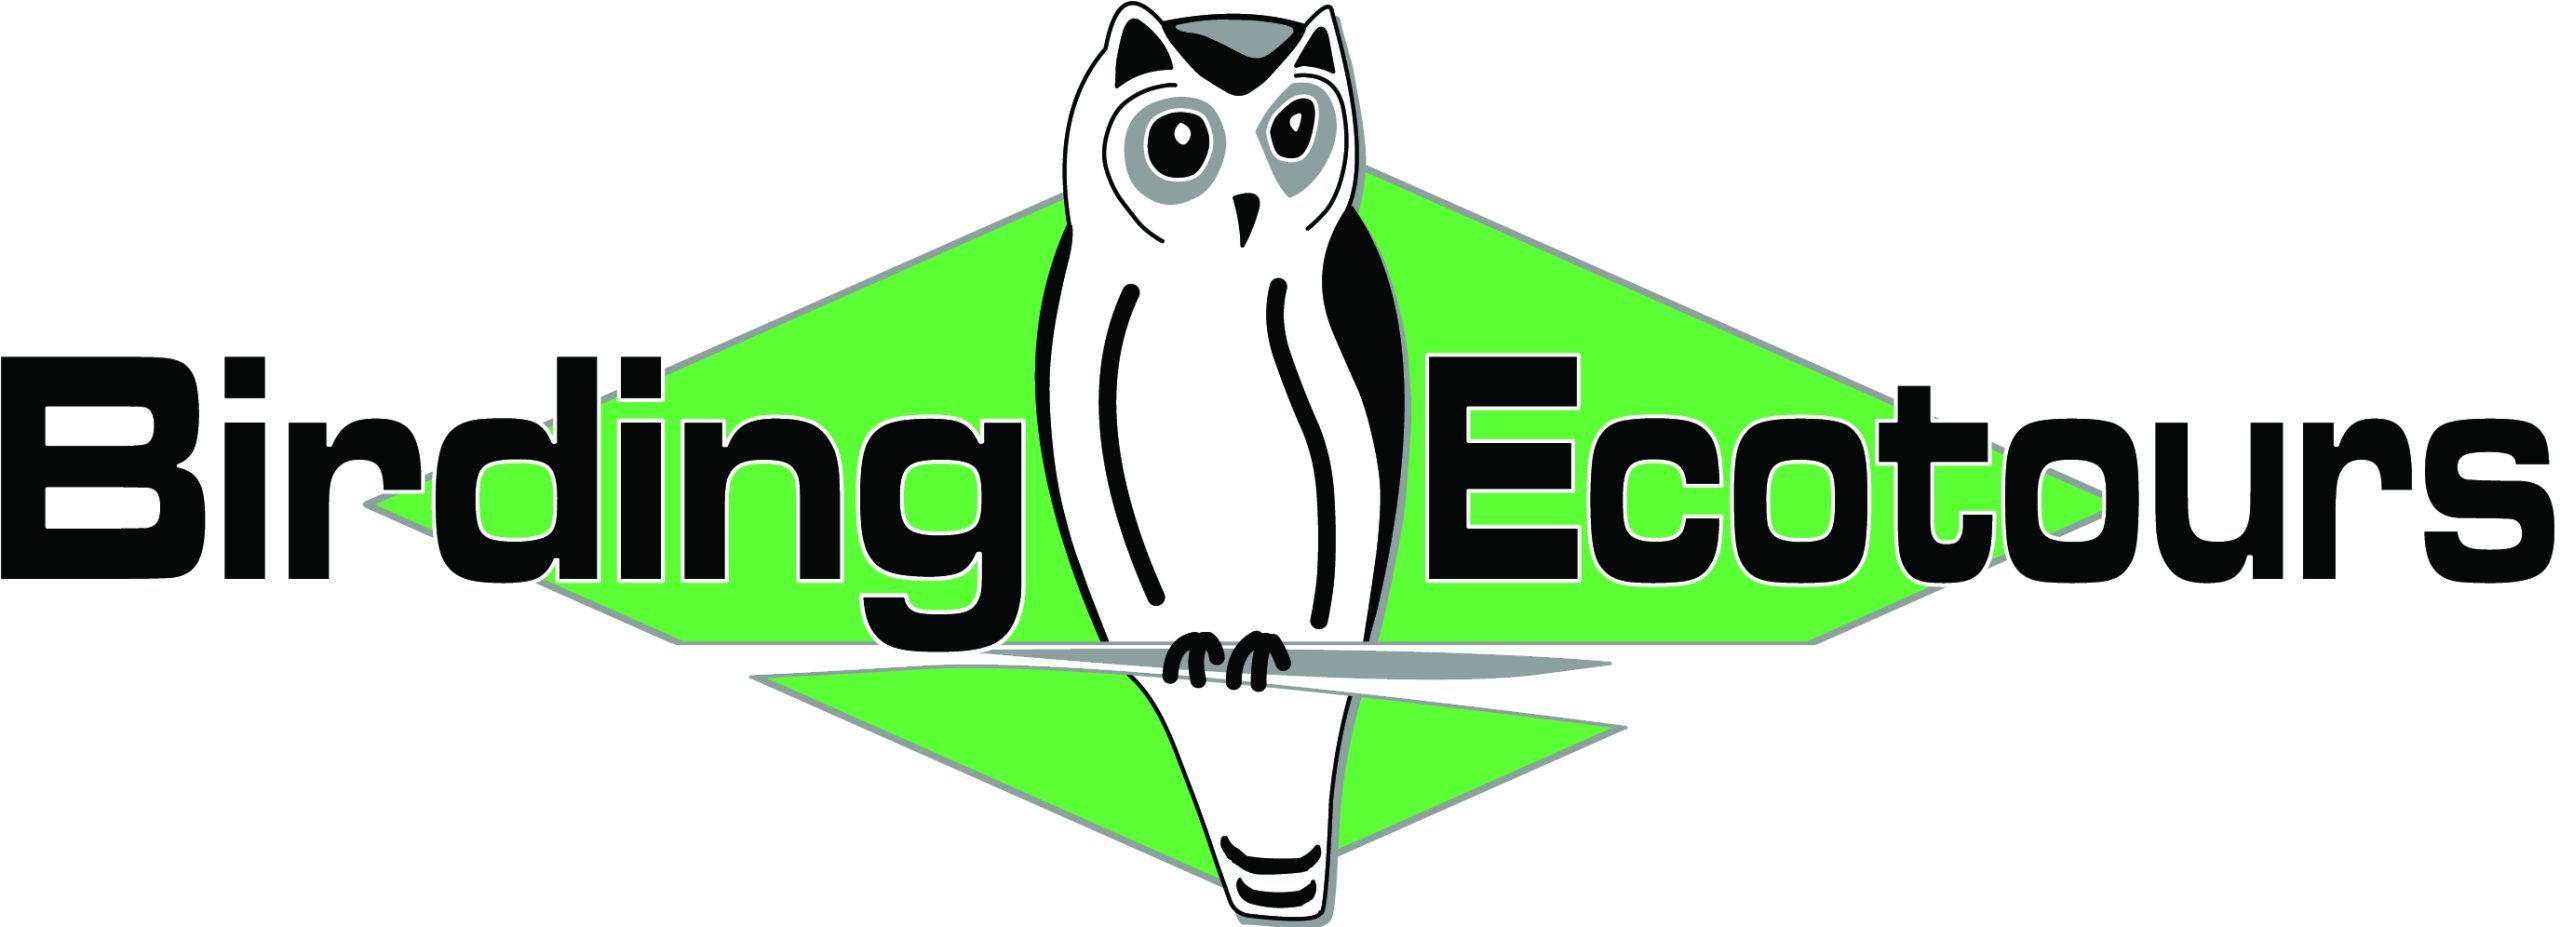 Birding Ecotours_logo